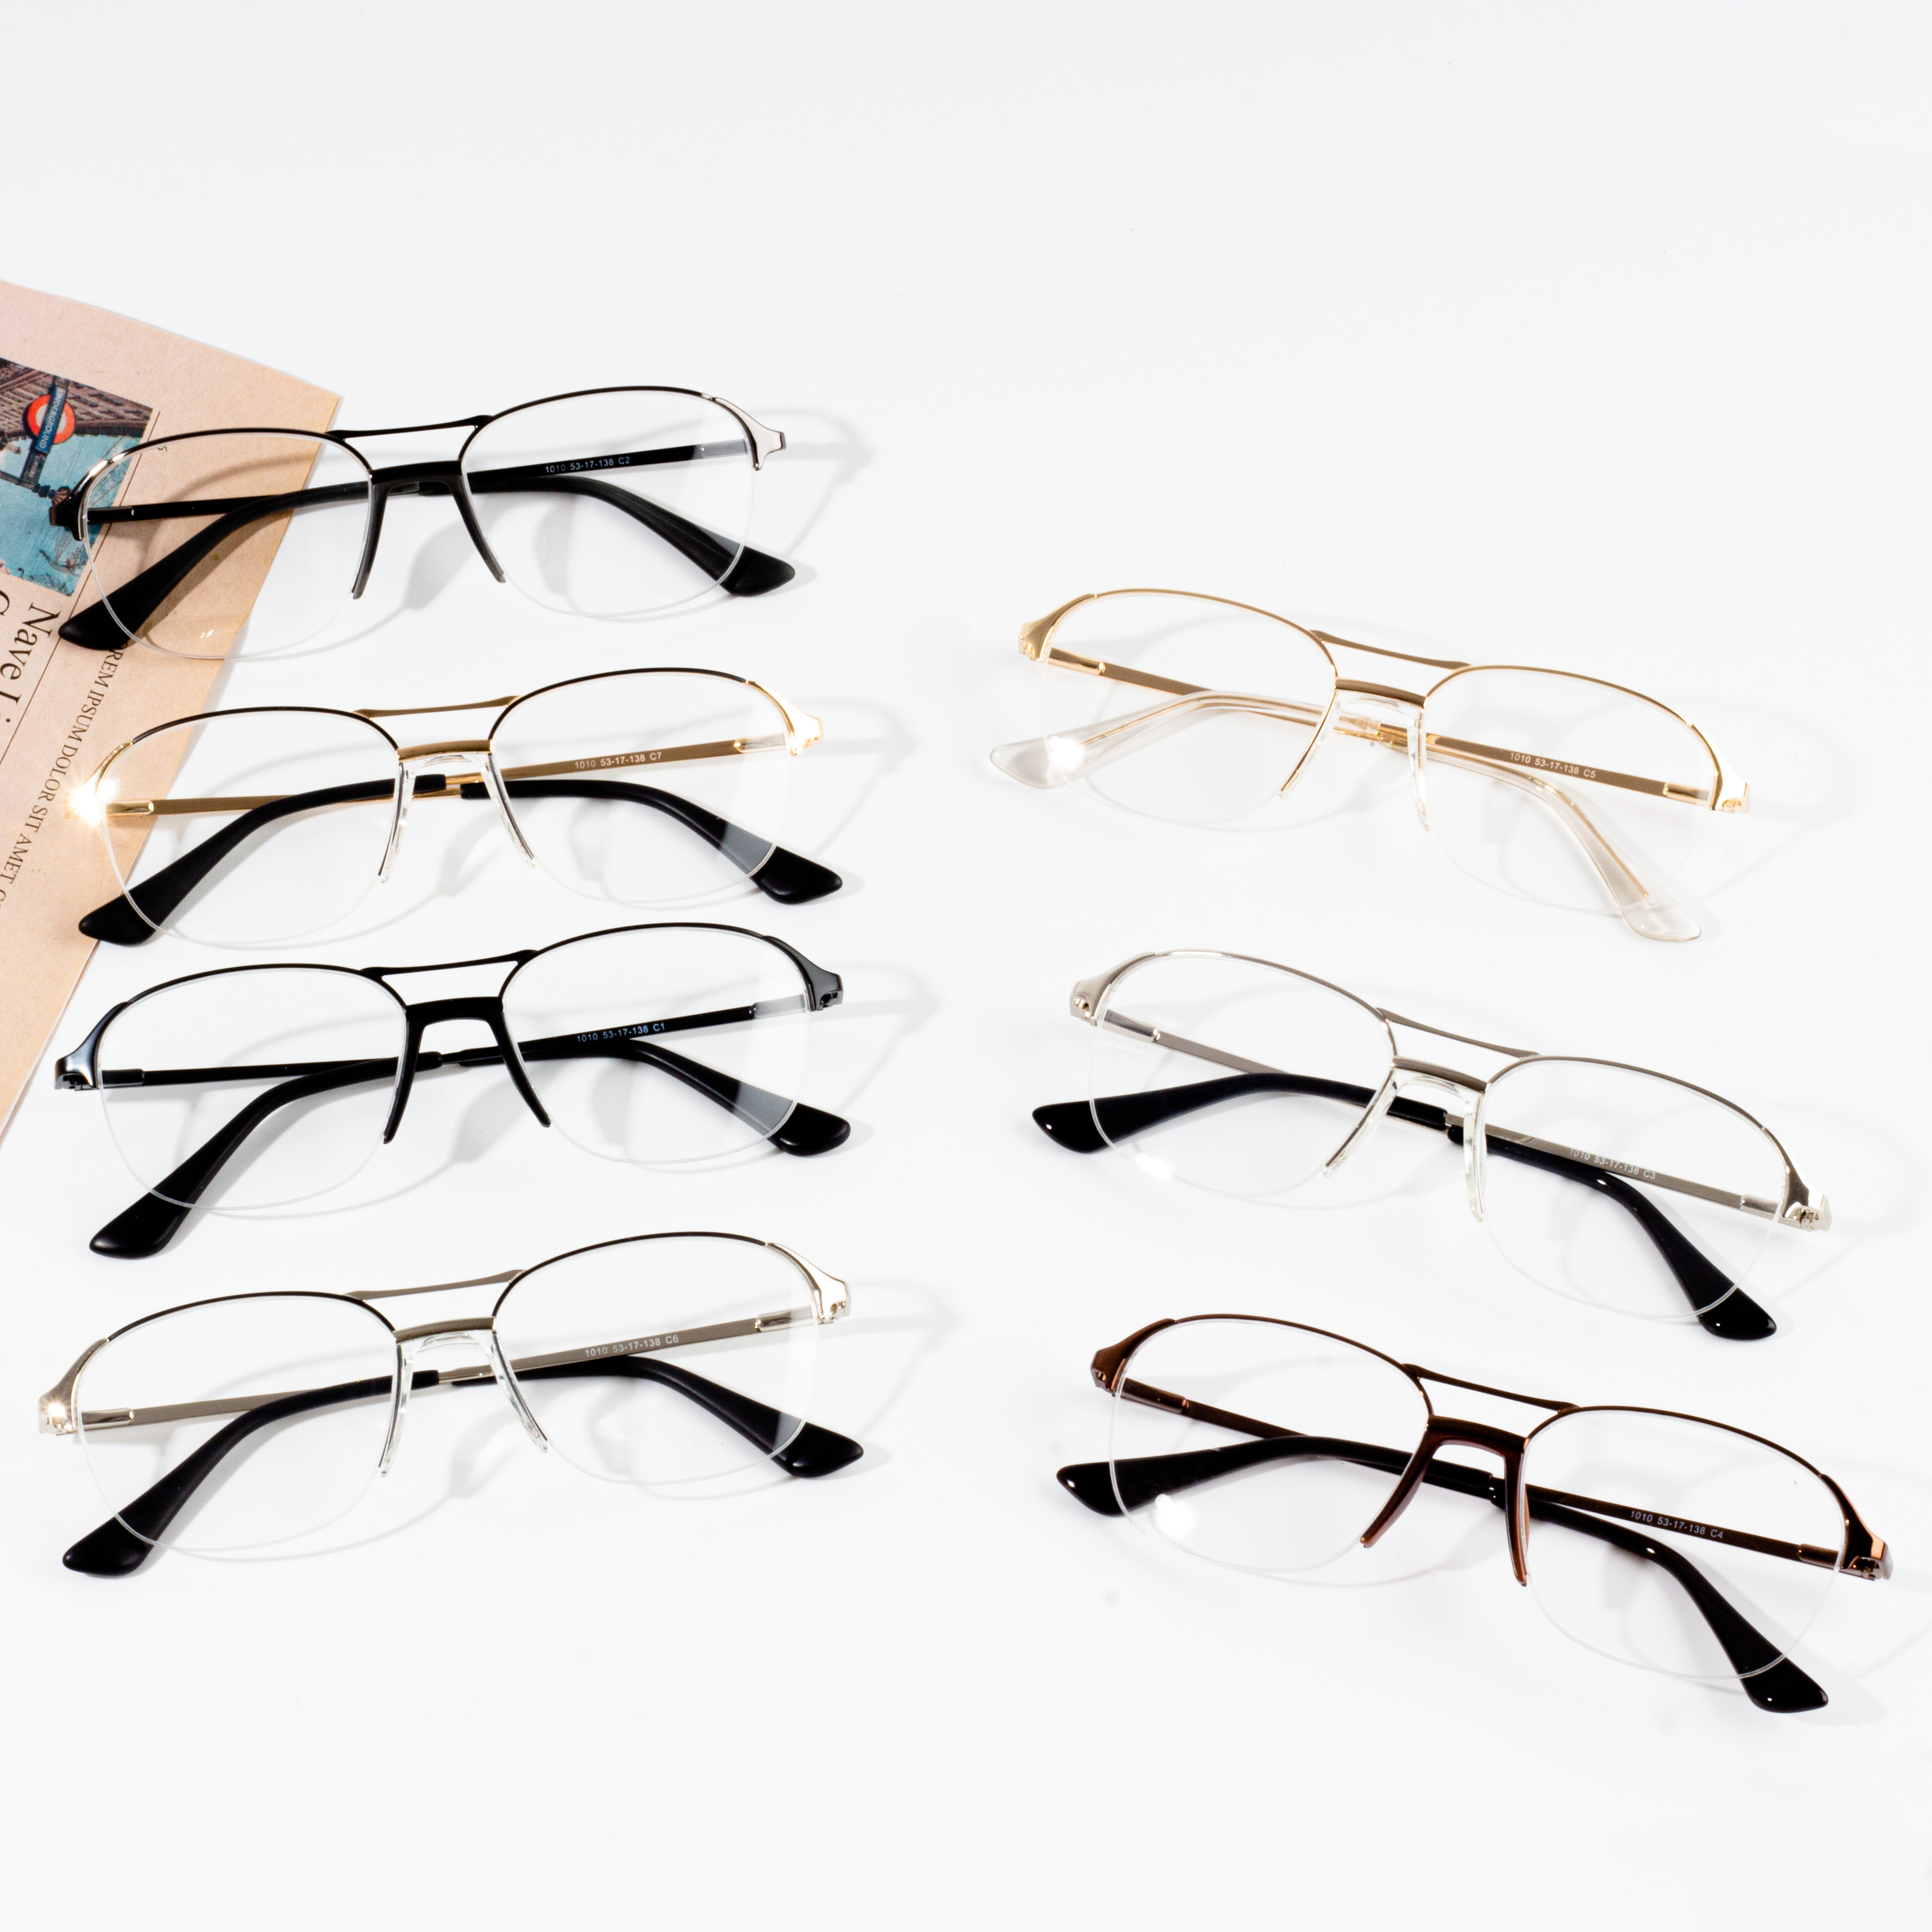 Le montature per occhiali da uomo più vendute sul mercato